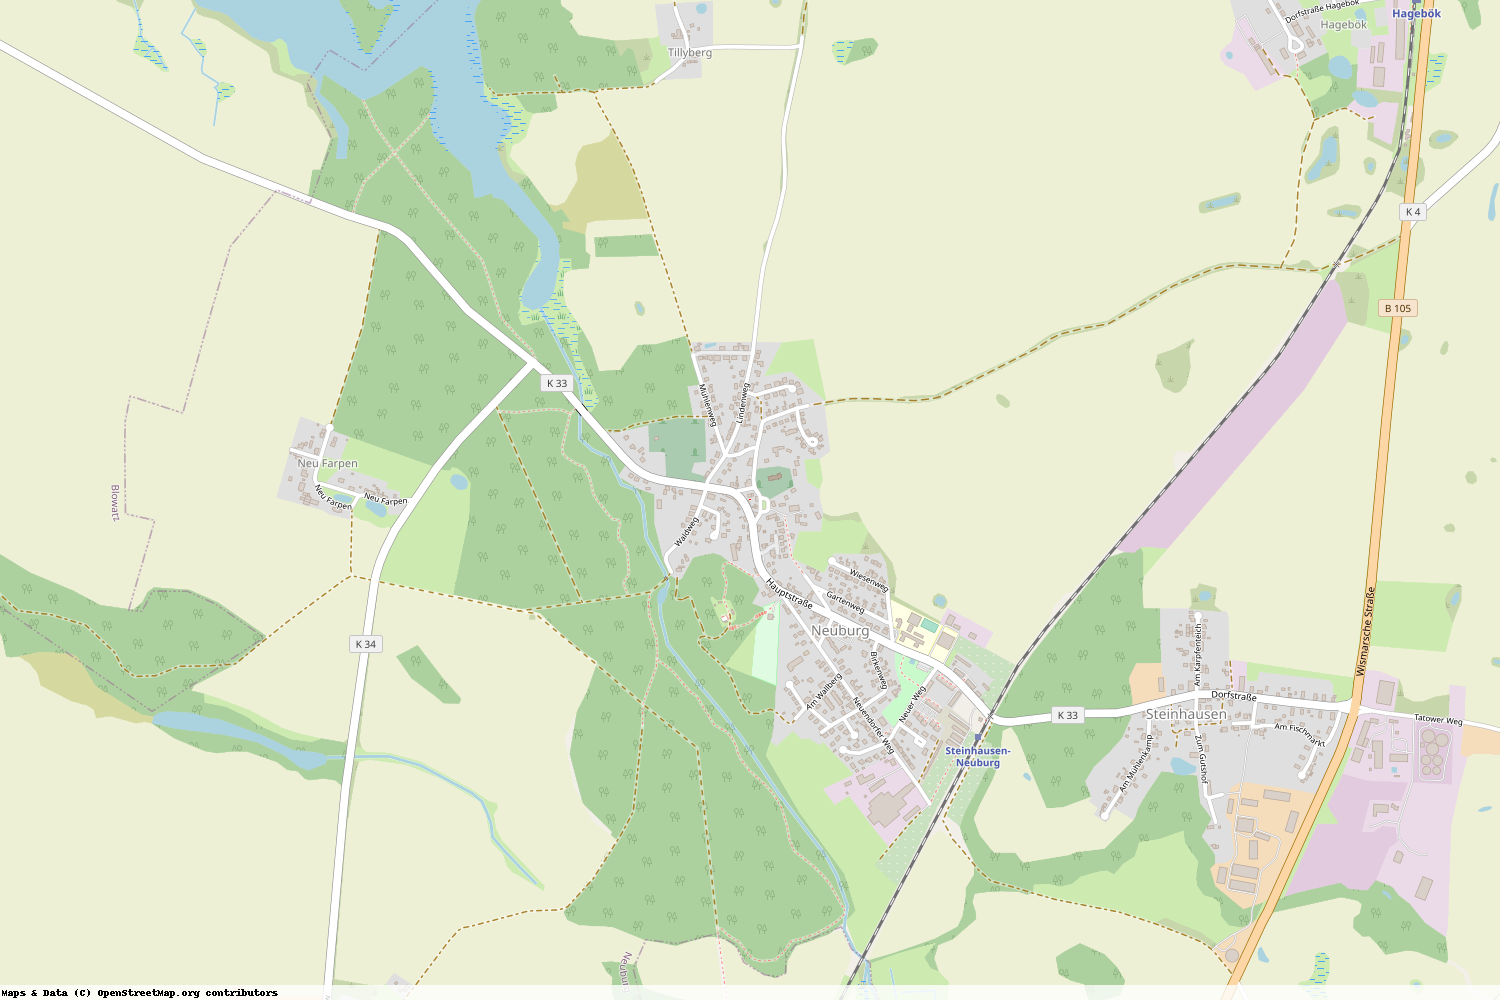 Ist gerade Stromausfall in Mecklenburg-Vorpommern - Nordwestmecklenburg - Neuburg?